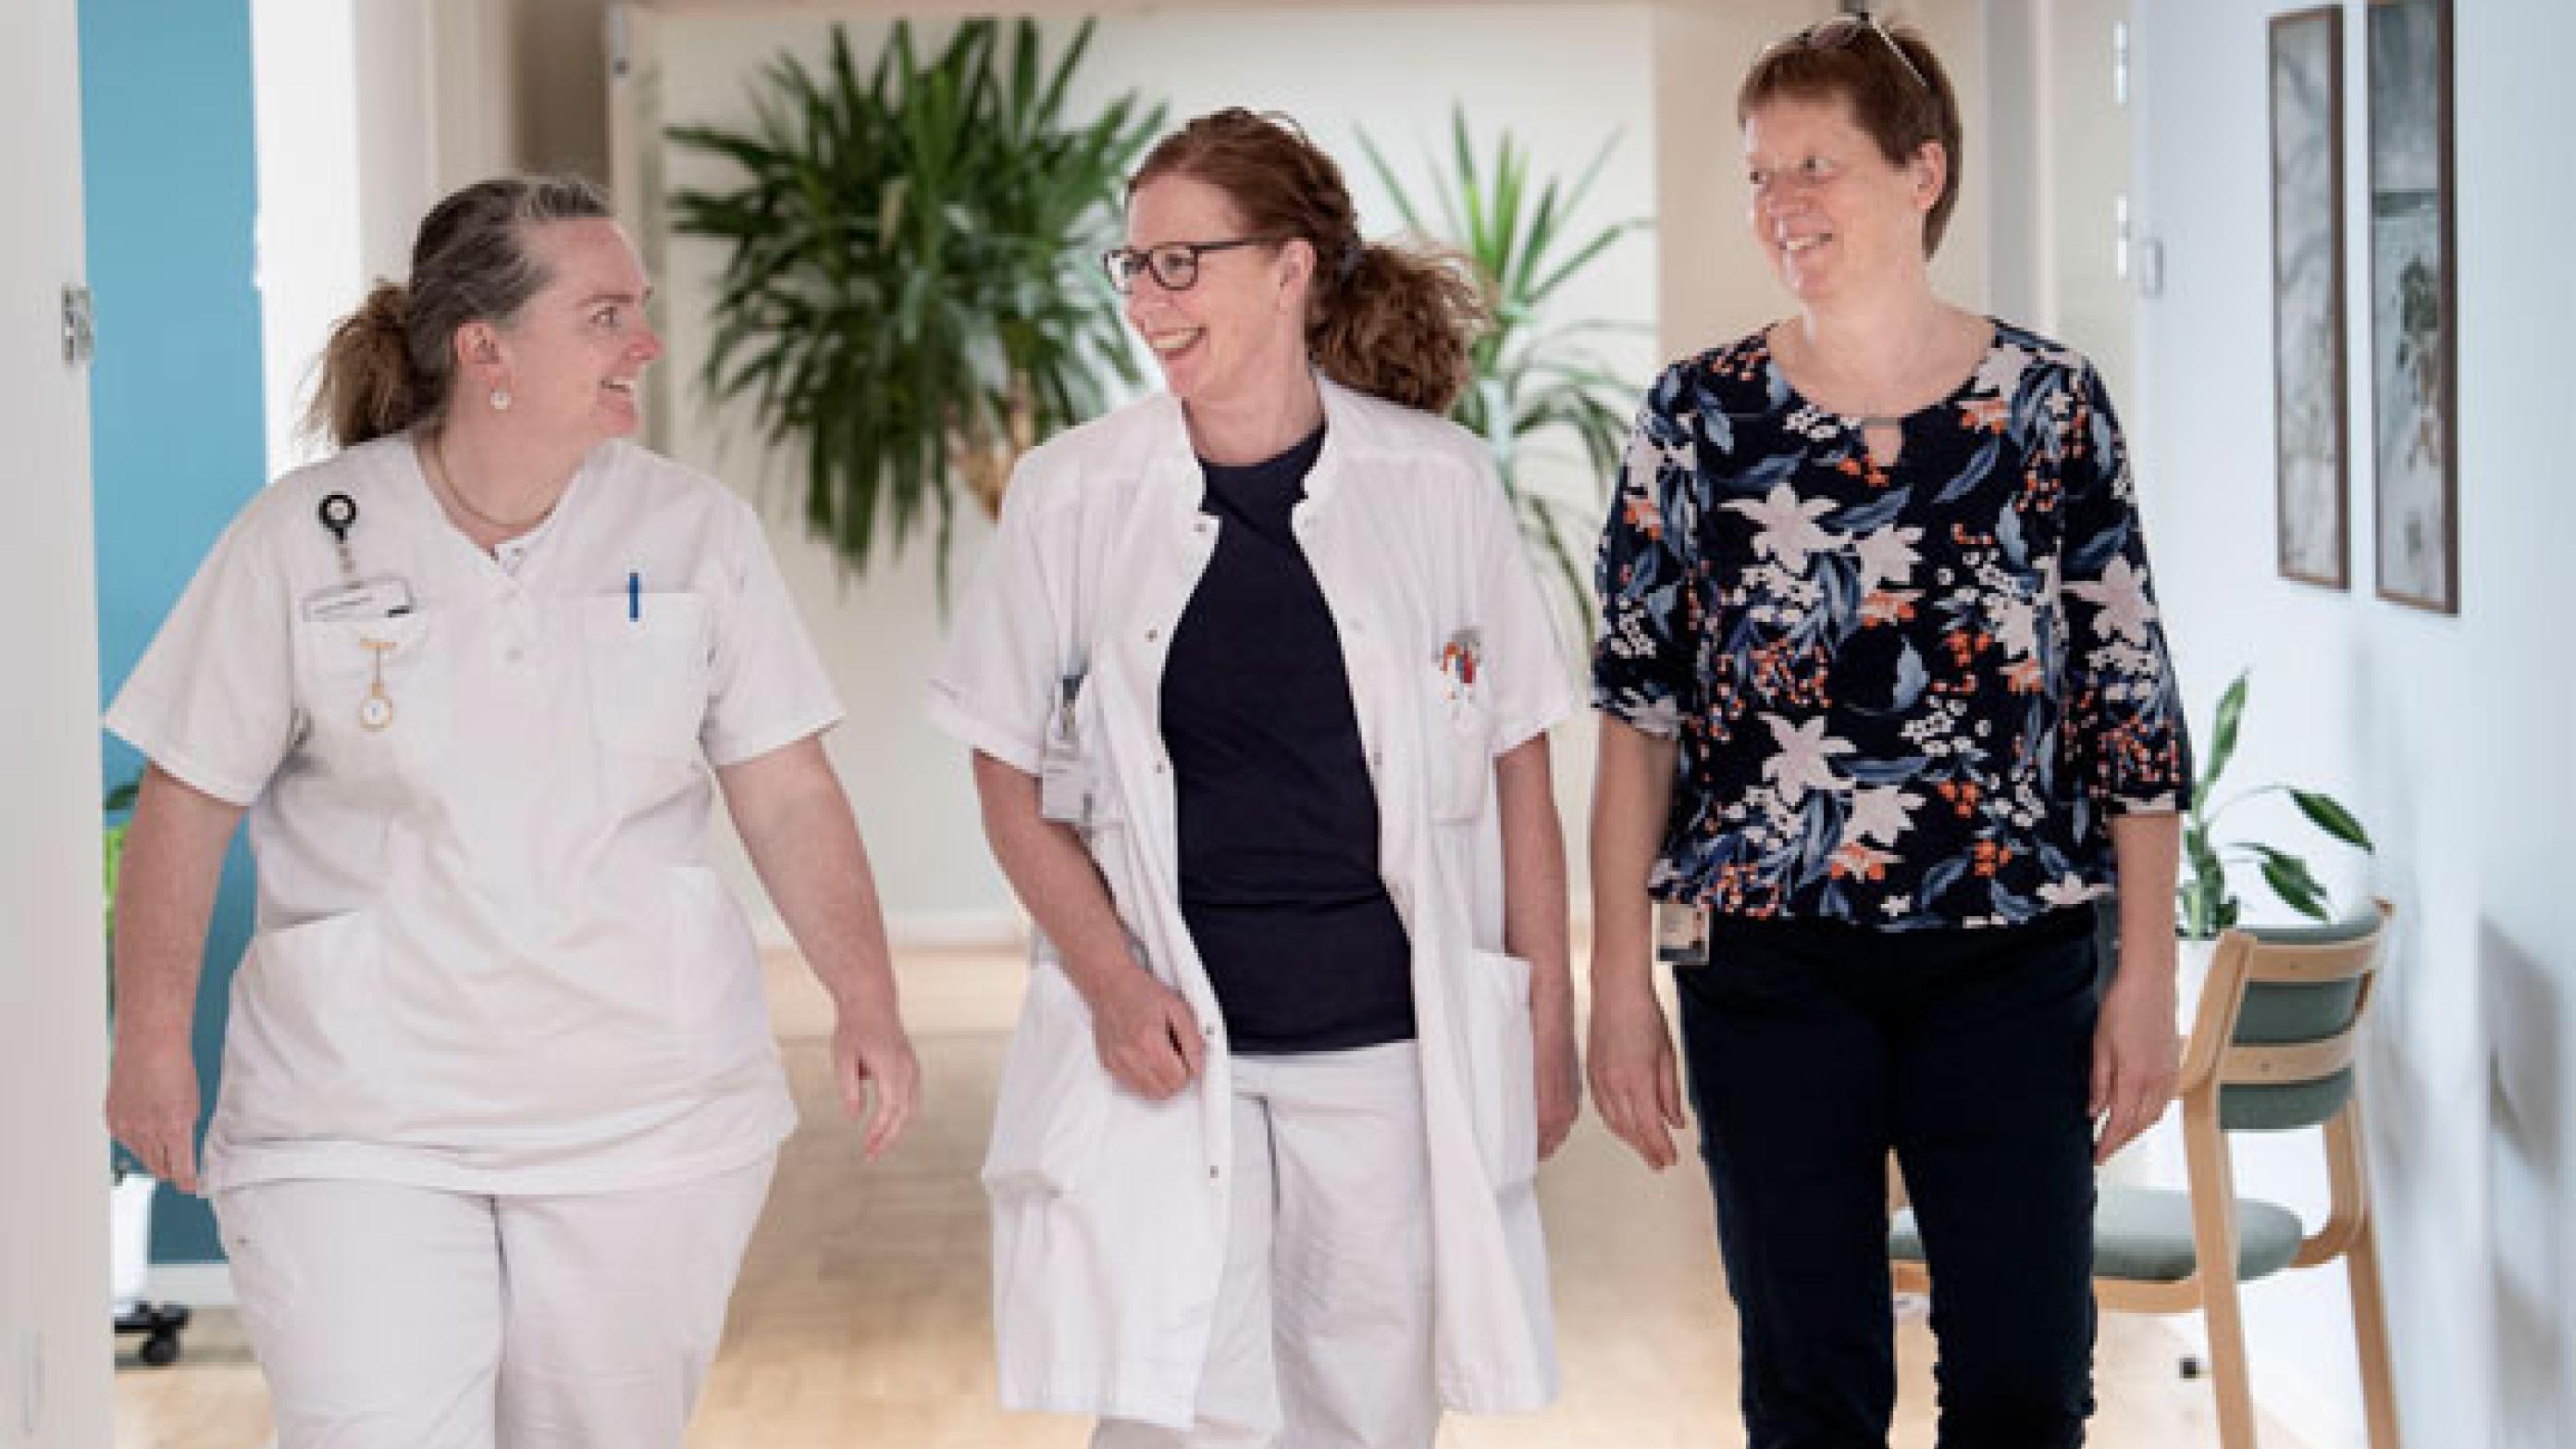 Tre af de kolleger, der arbejder med liasonsomatik er sygeplejerske Lone Volsgaard, endokrinolog Jenna Rosenqvist Ibsen og koordinator Anne Marie Dahlgaard. Foto: Lars Horn / Baghuset 